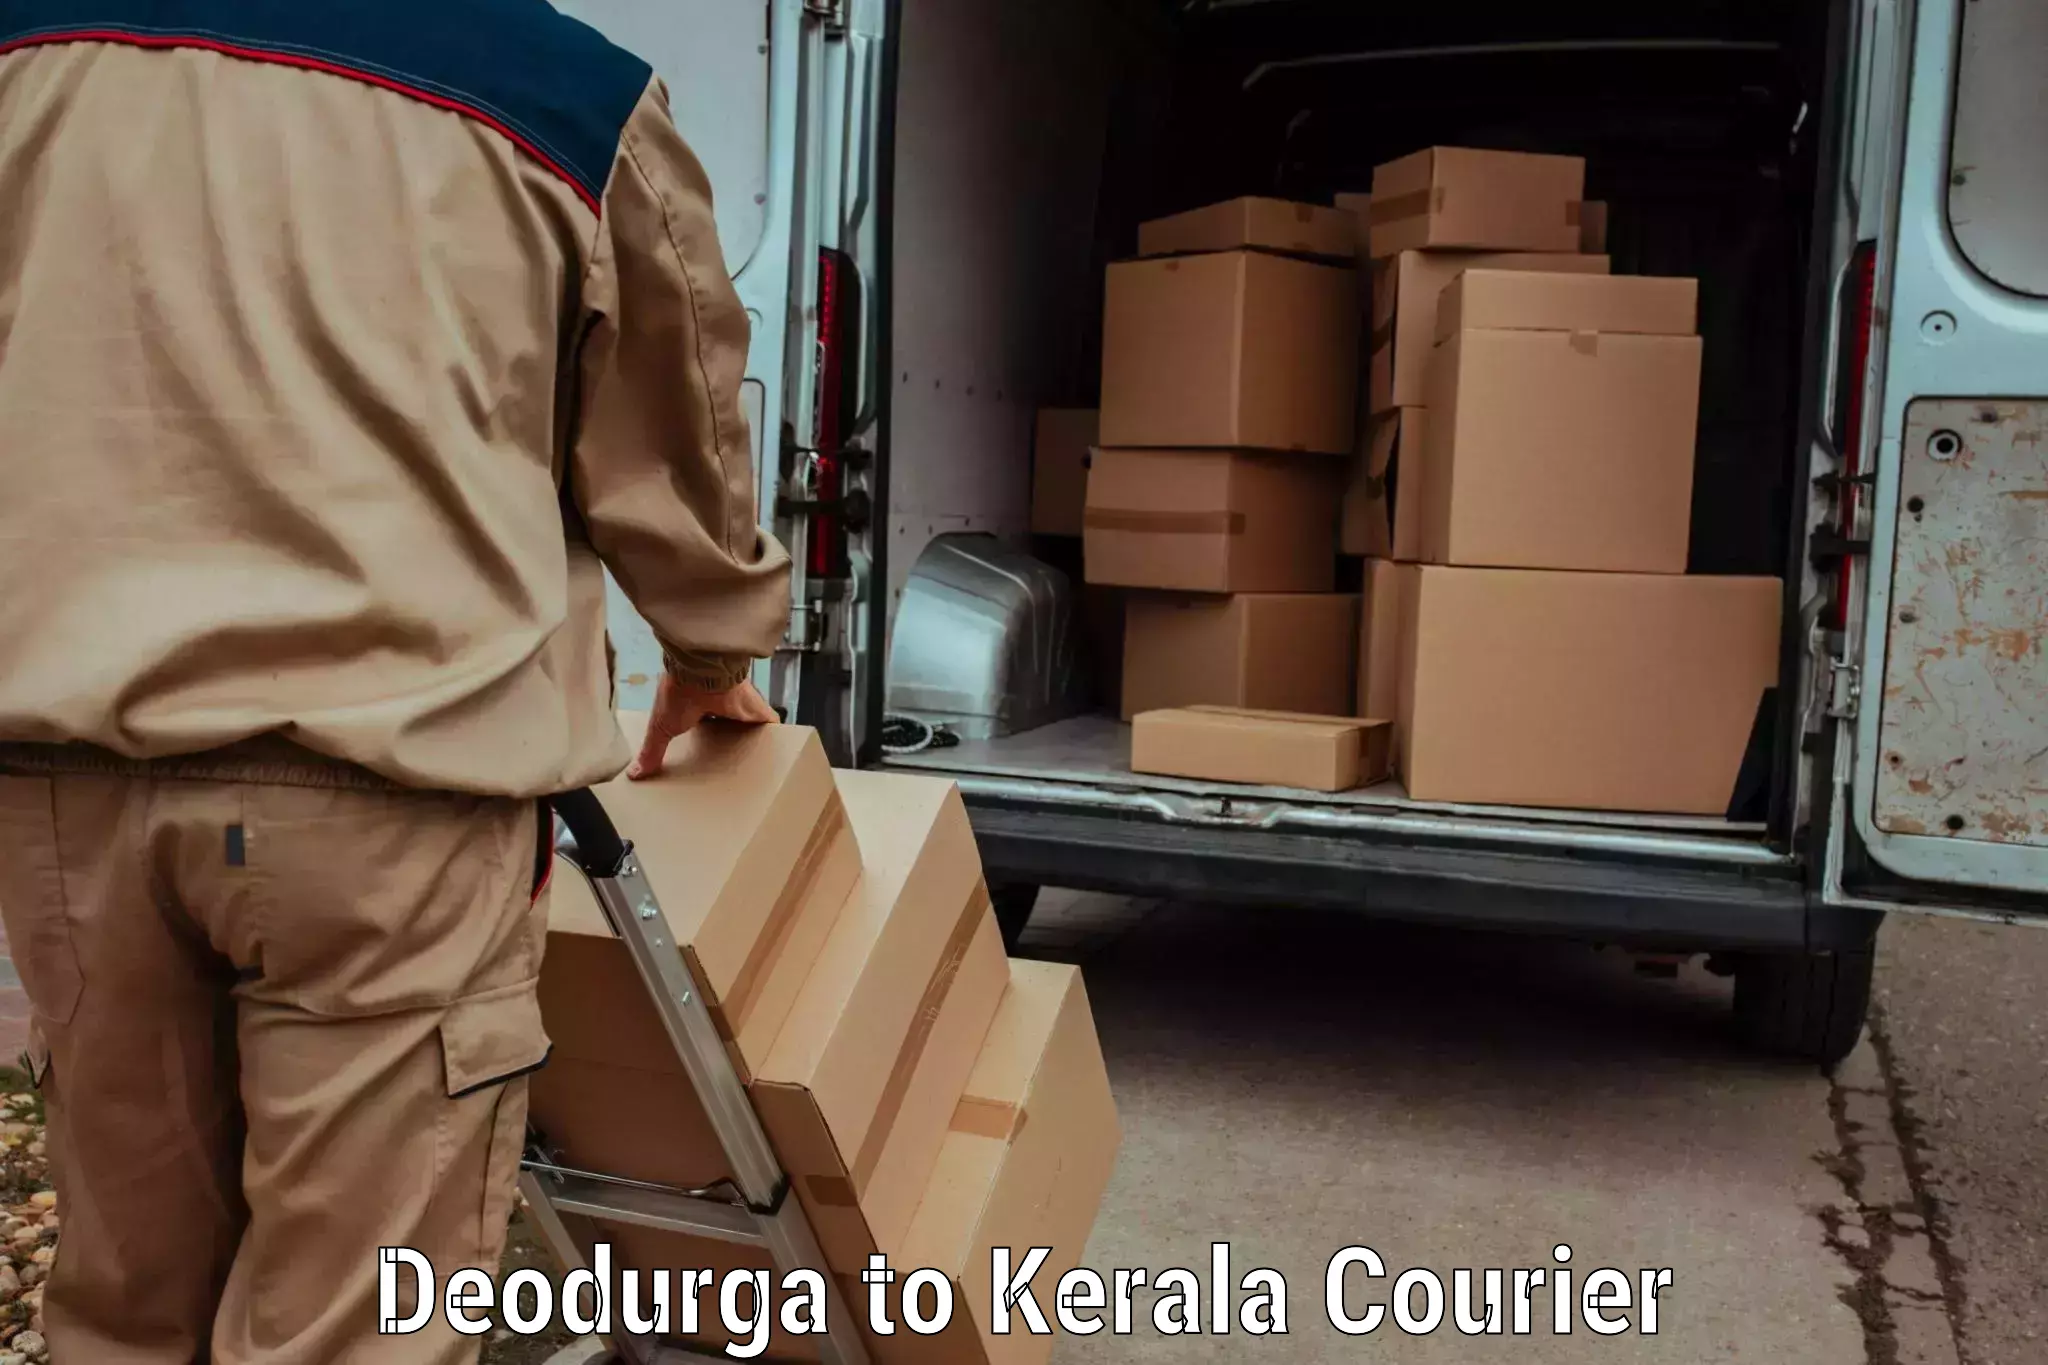 Electronic items luggage shipping Deodurga to Kerala